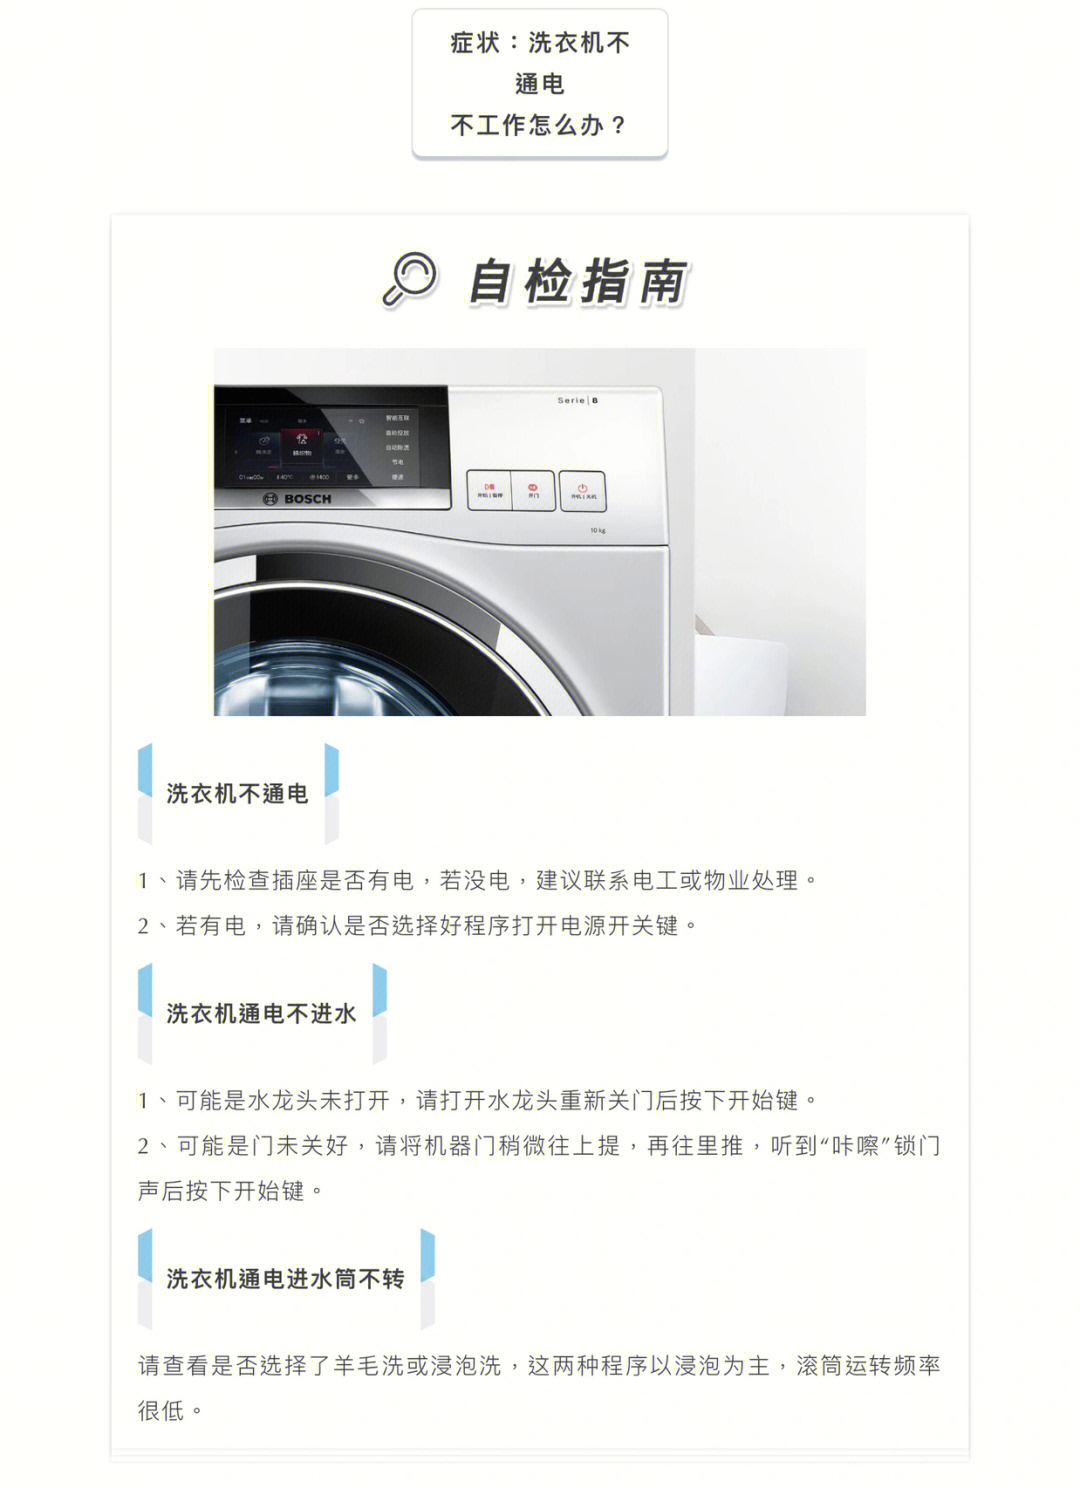 博世洗衣机故障图说明图片